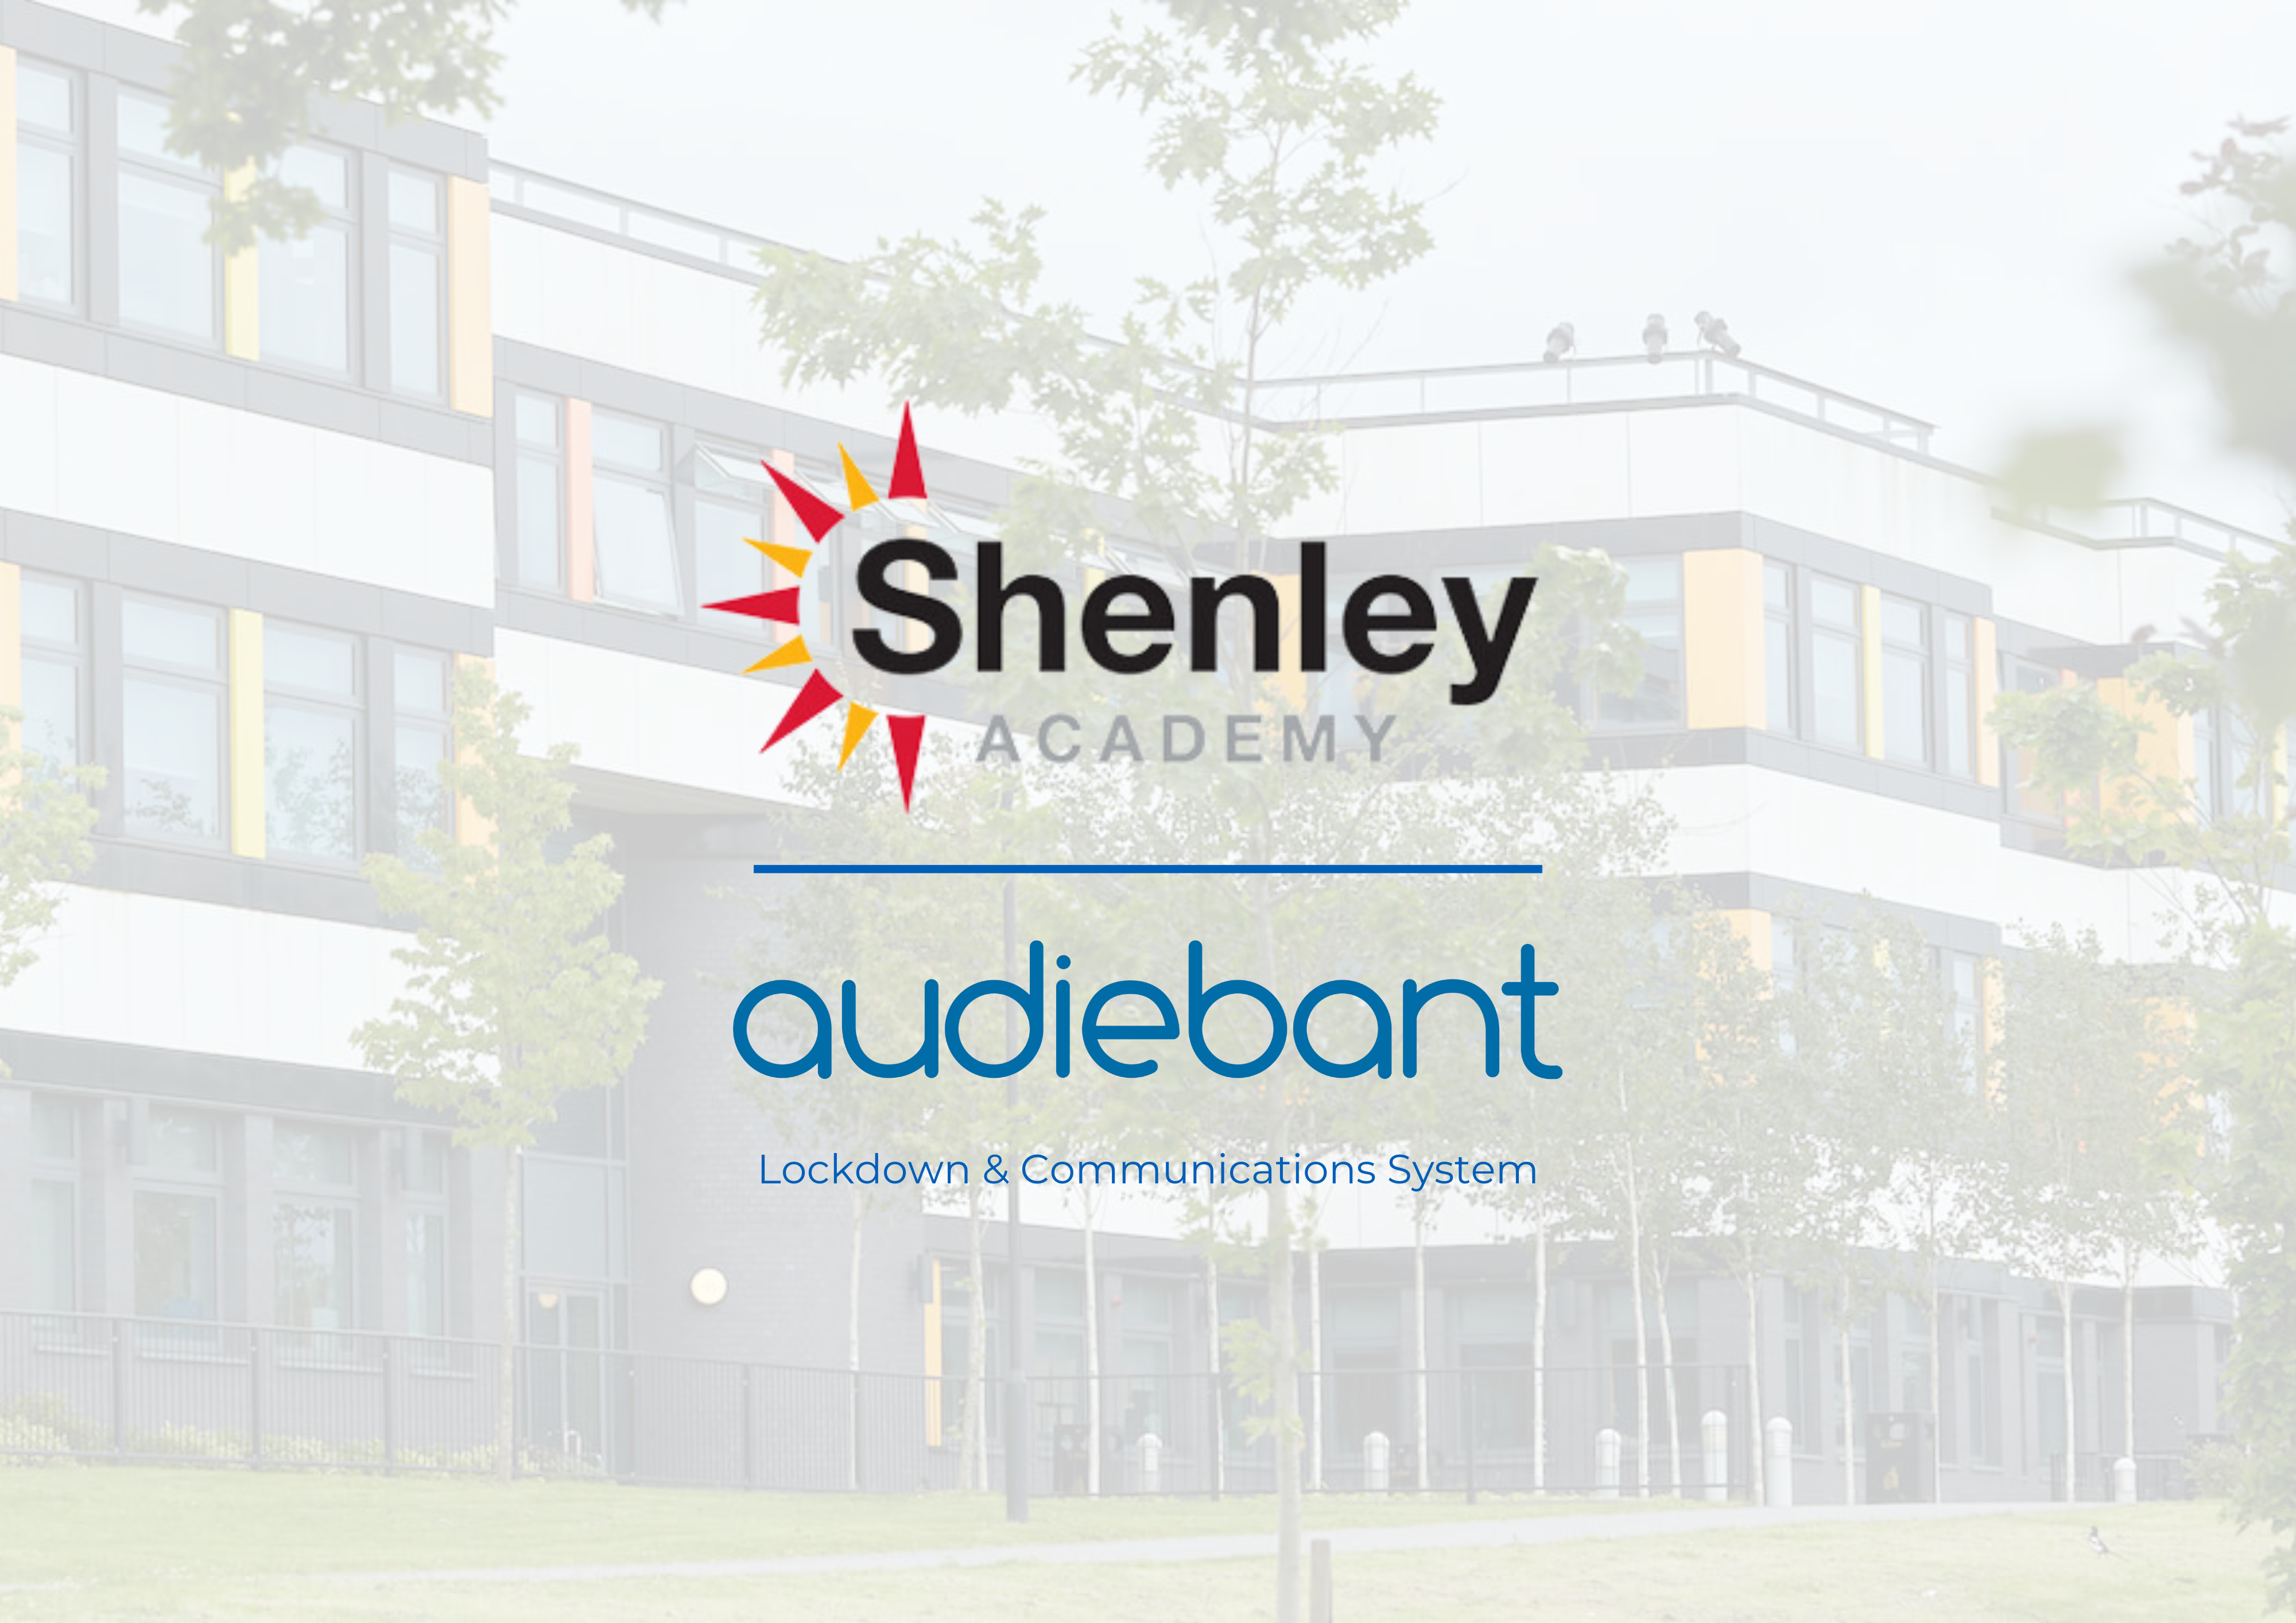 Shenley Academy Audiebant Partnership